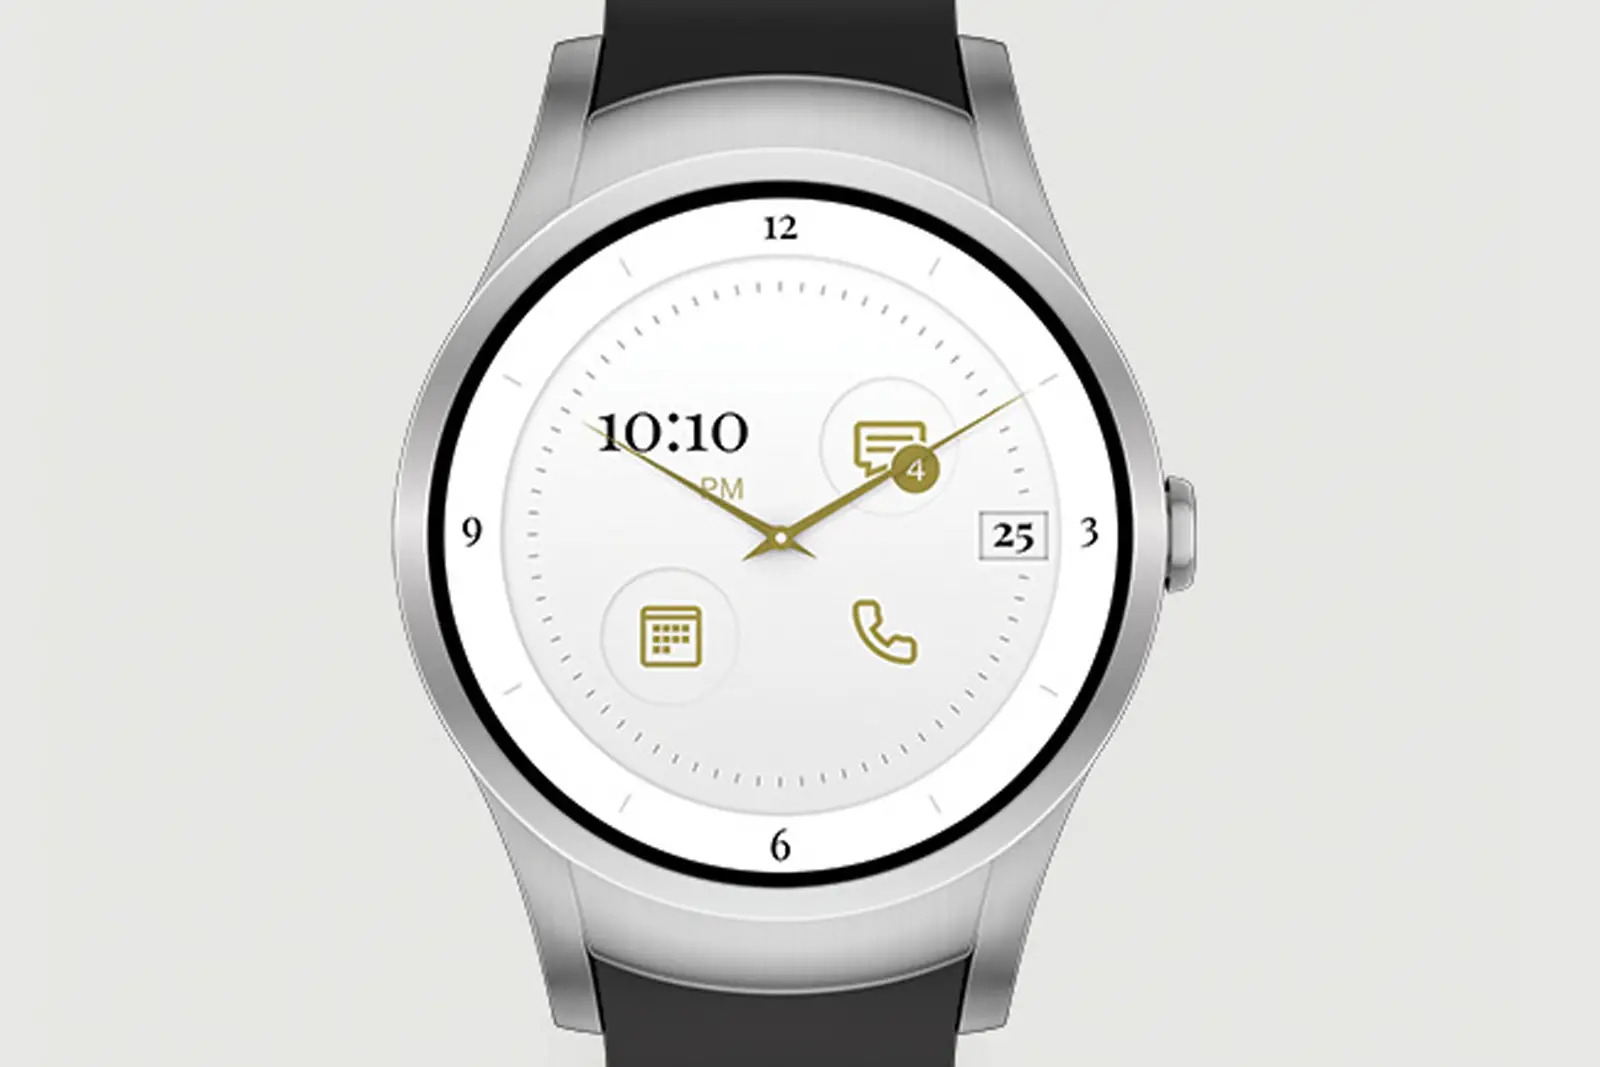 Verizon Wear24 – AndroidWear Based Smartwatch